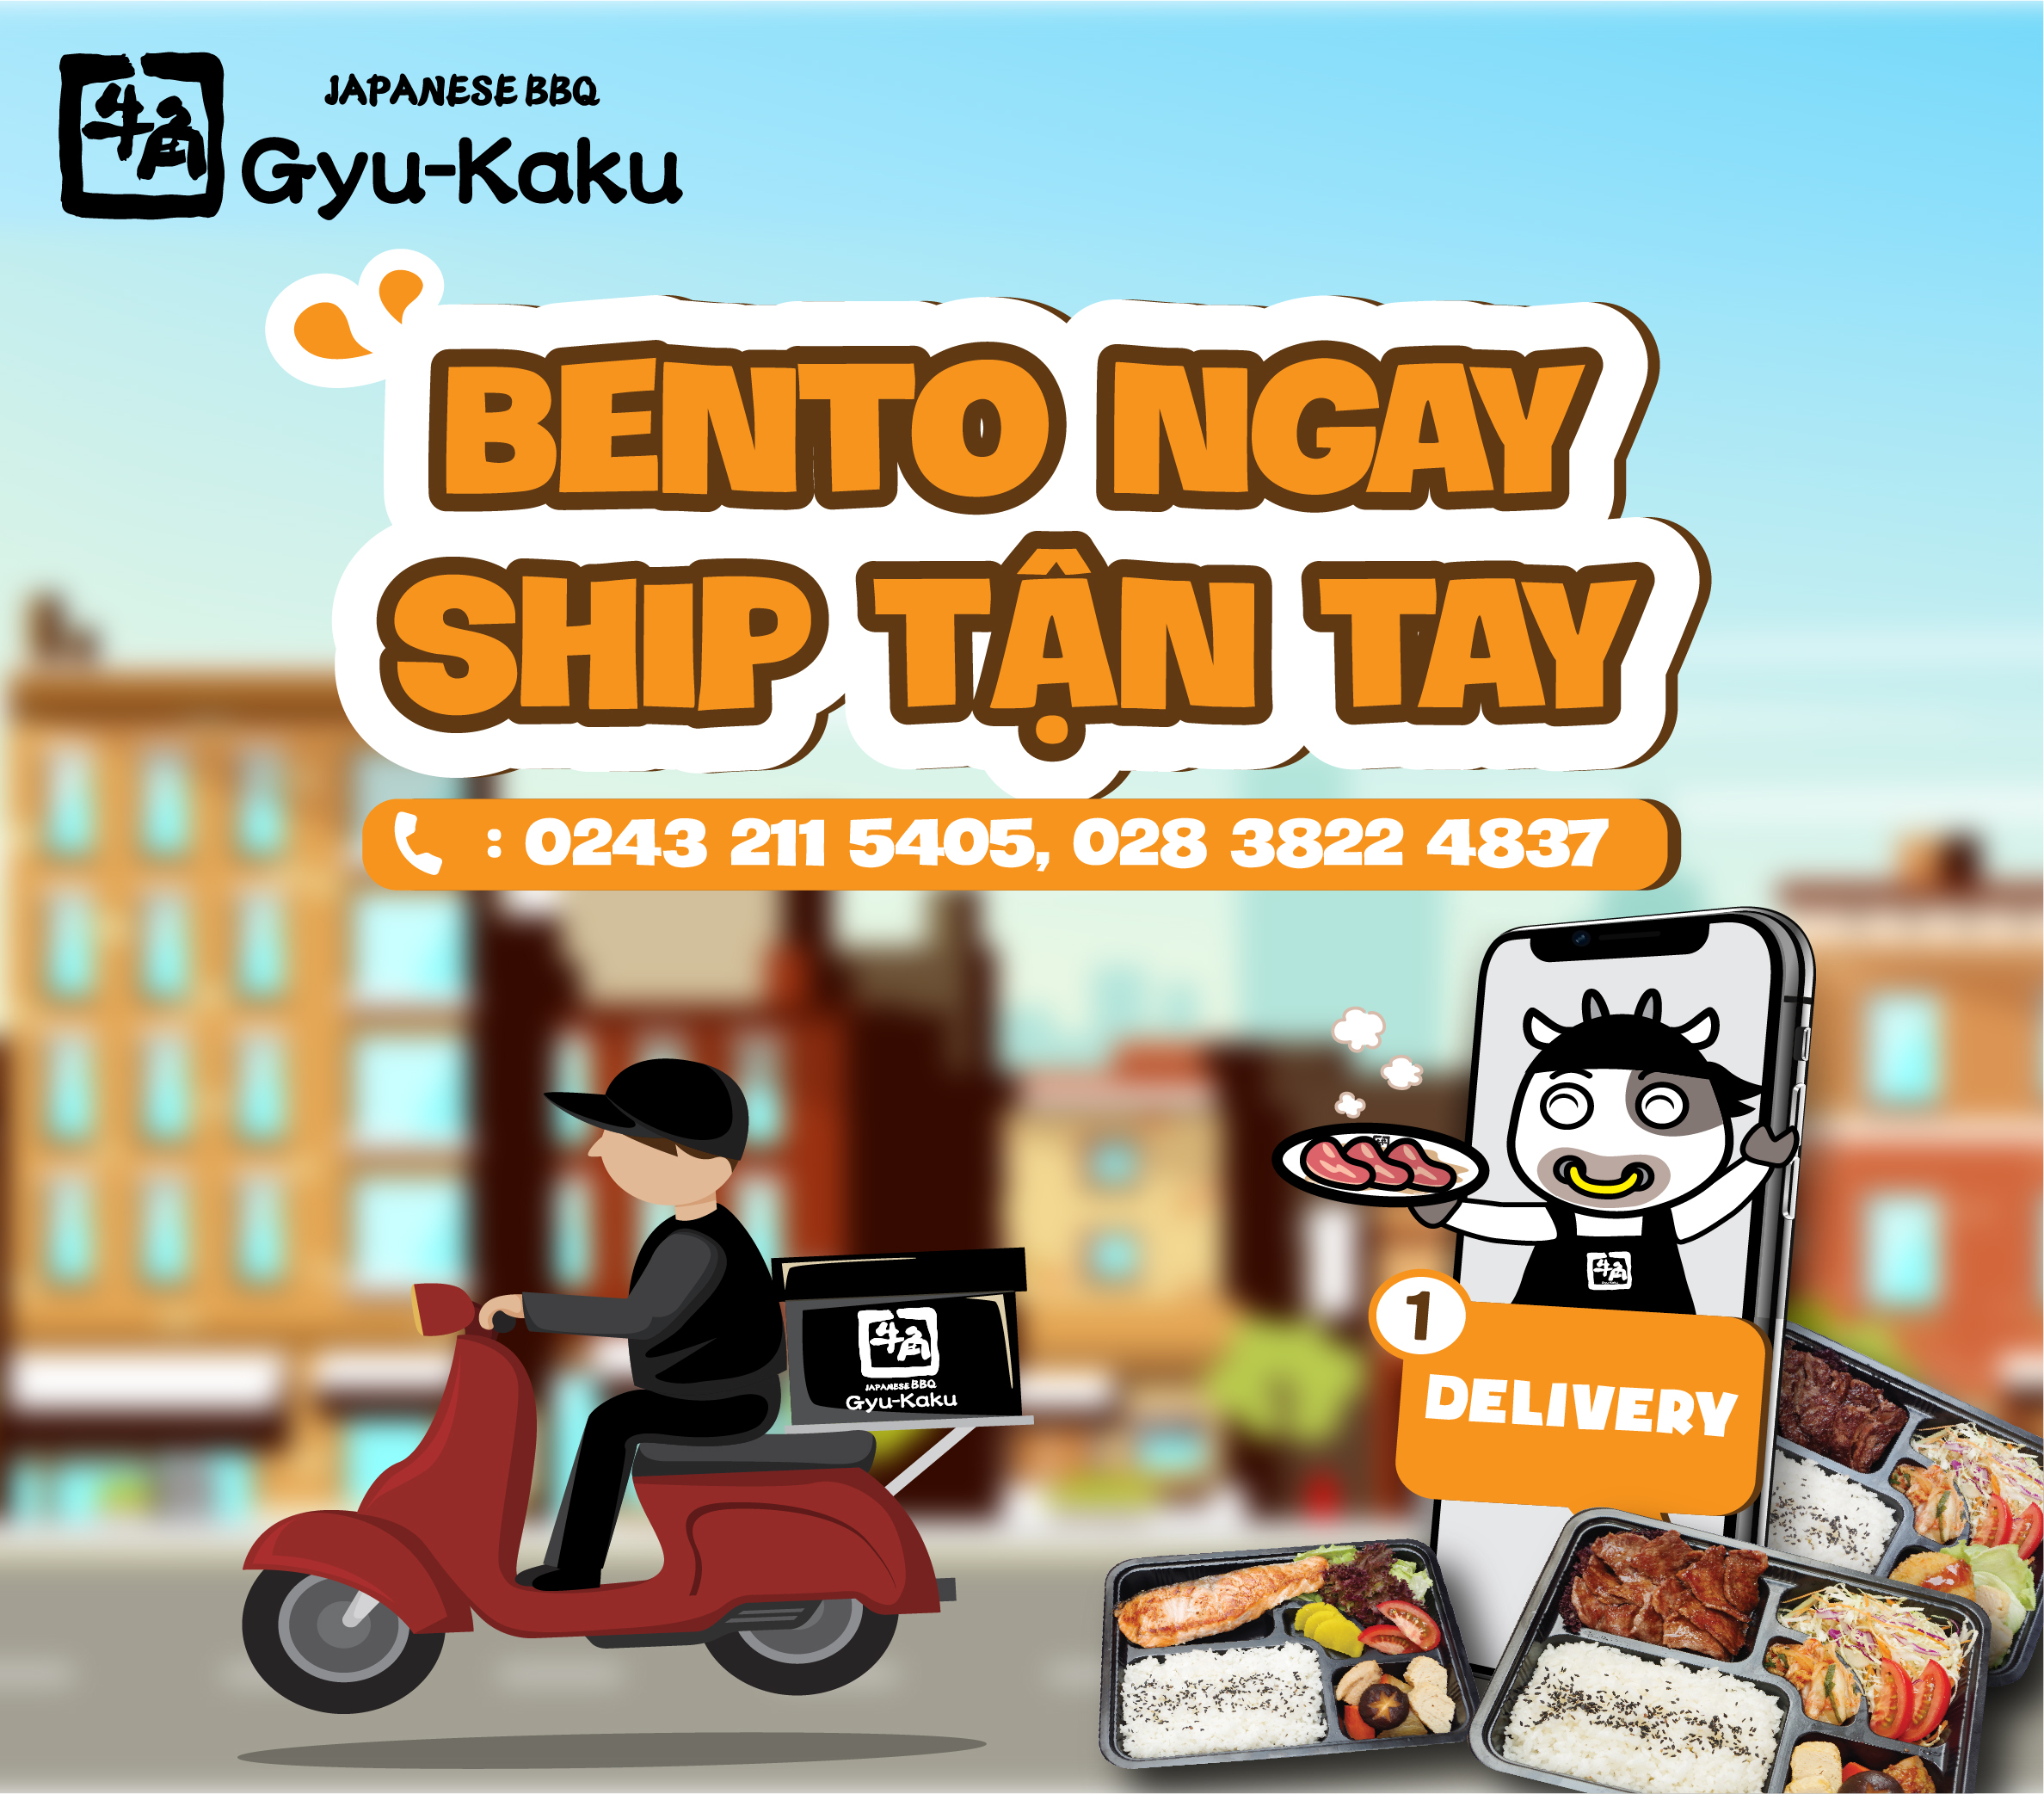 Gọi Gyu Ngay - Ship Tận Tay